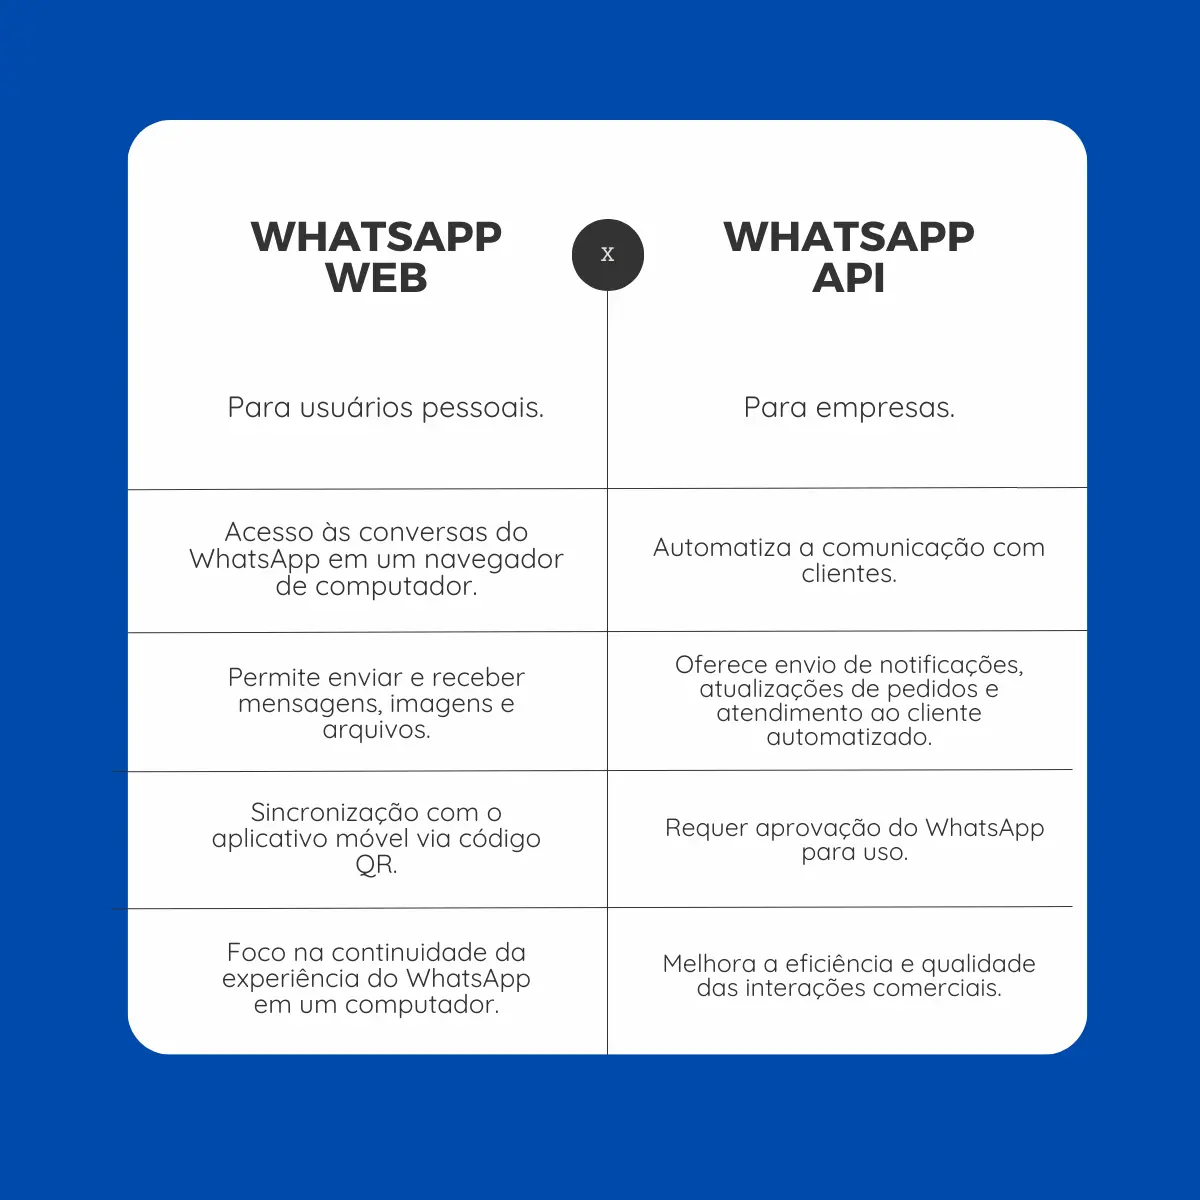 imagem ilustrando a diferença entre Whatsapp Web e Whatsapp API